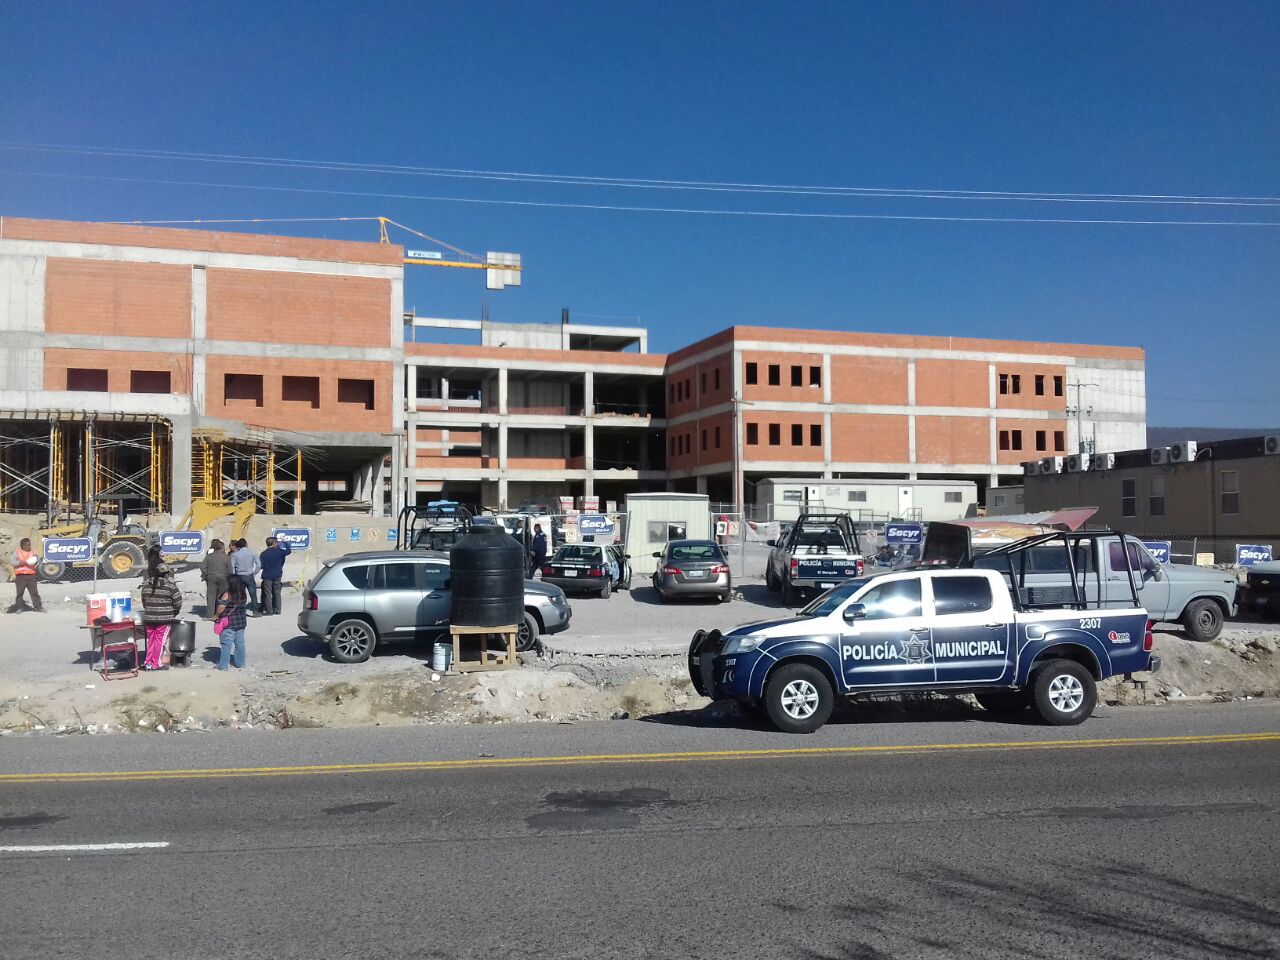  Reportan robo en obra del Hospital General de El Marqués